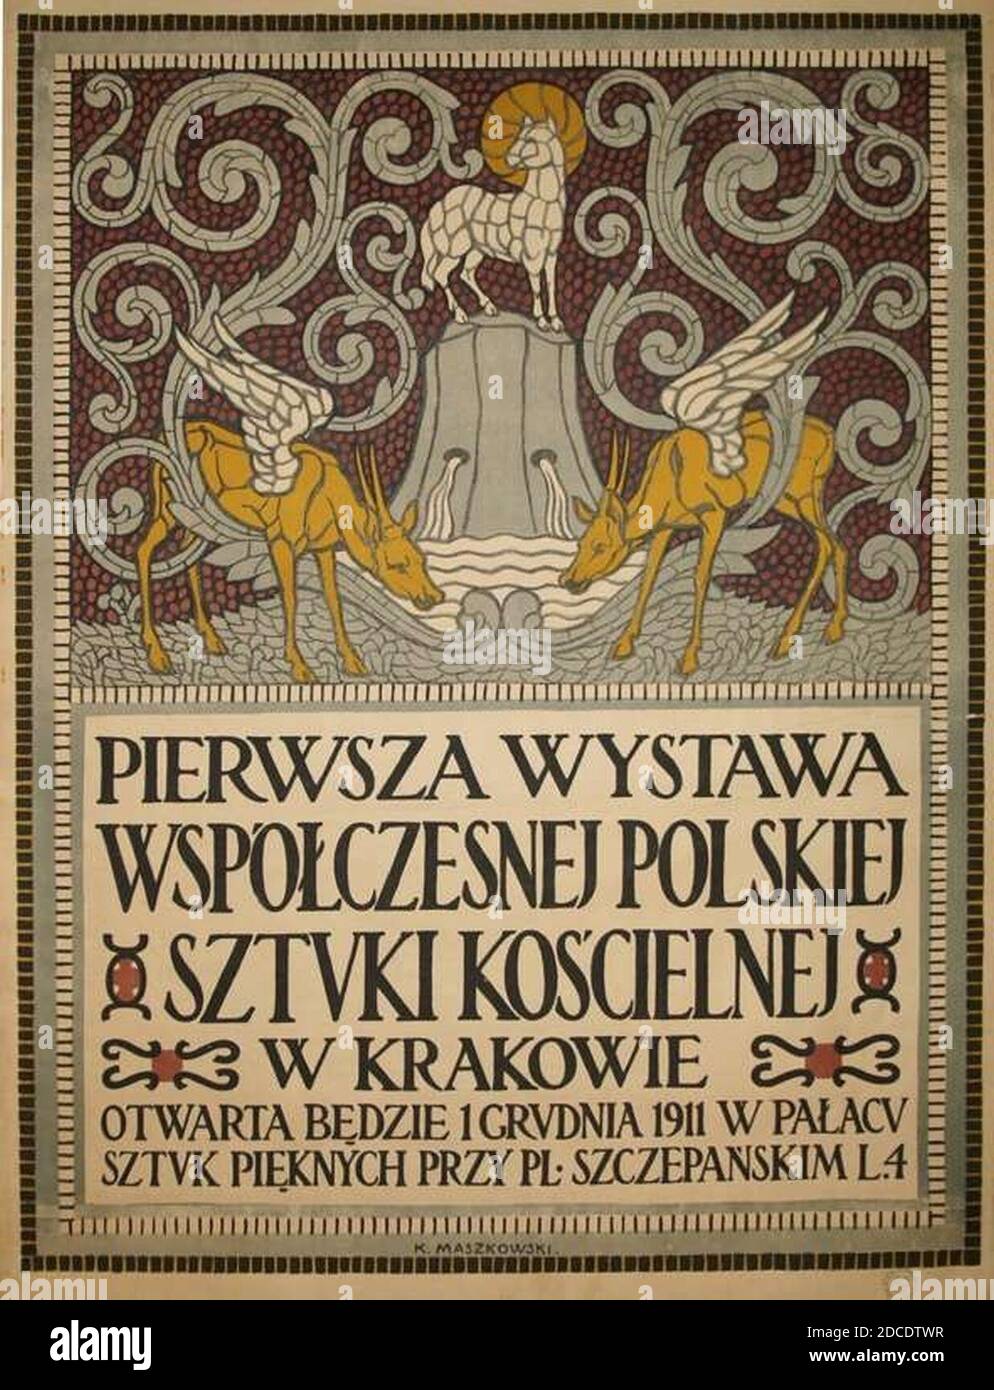 Karol Zyndram Maszkowski Wystawa sztuki kościelnej 1911. Stock Photo